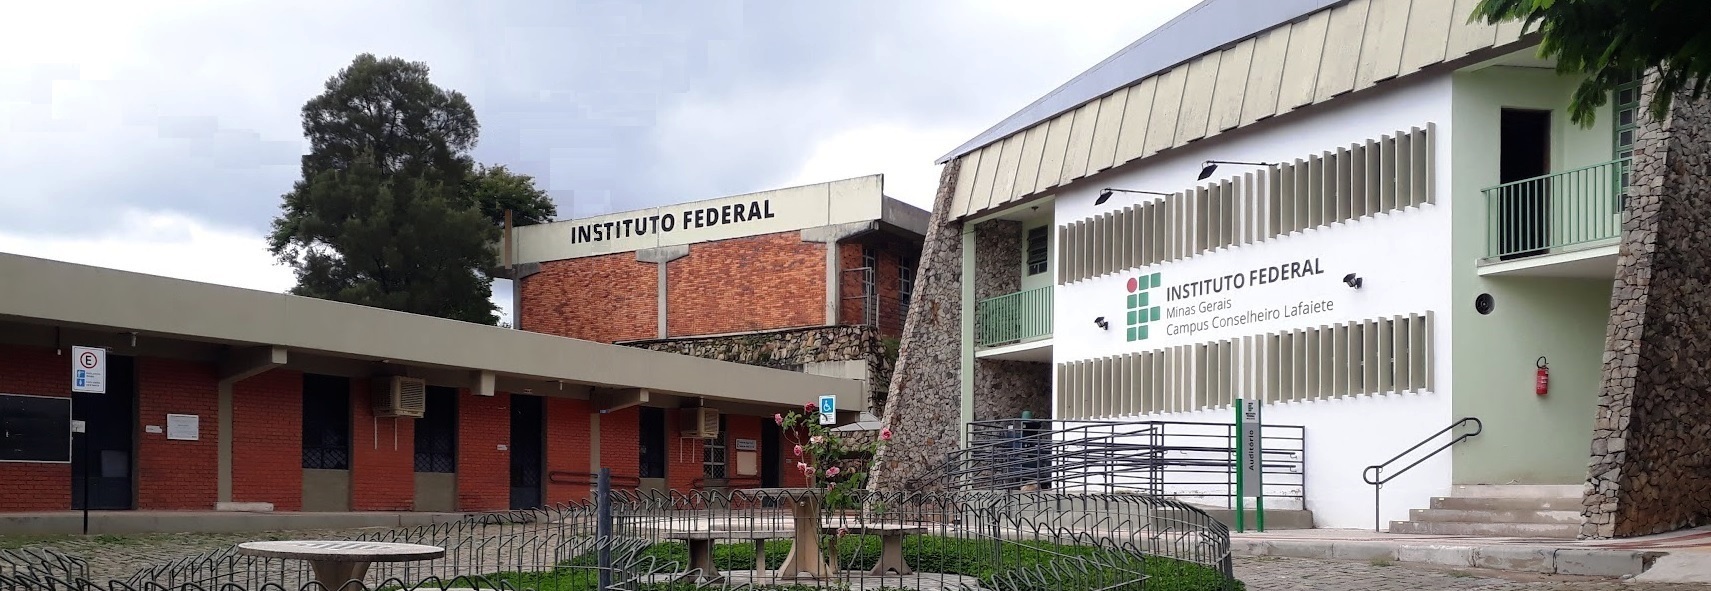 Oficina temática de Xadrez Intercampi acontece no dia 21/07 — Instituto  Federal de Educação, Ciência e Tecnologia de Minas Gerais Campus  Conselheiro Lafaiete